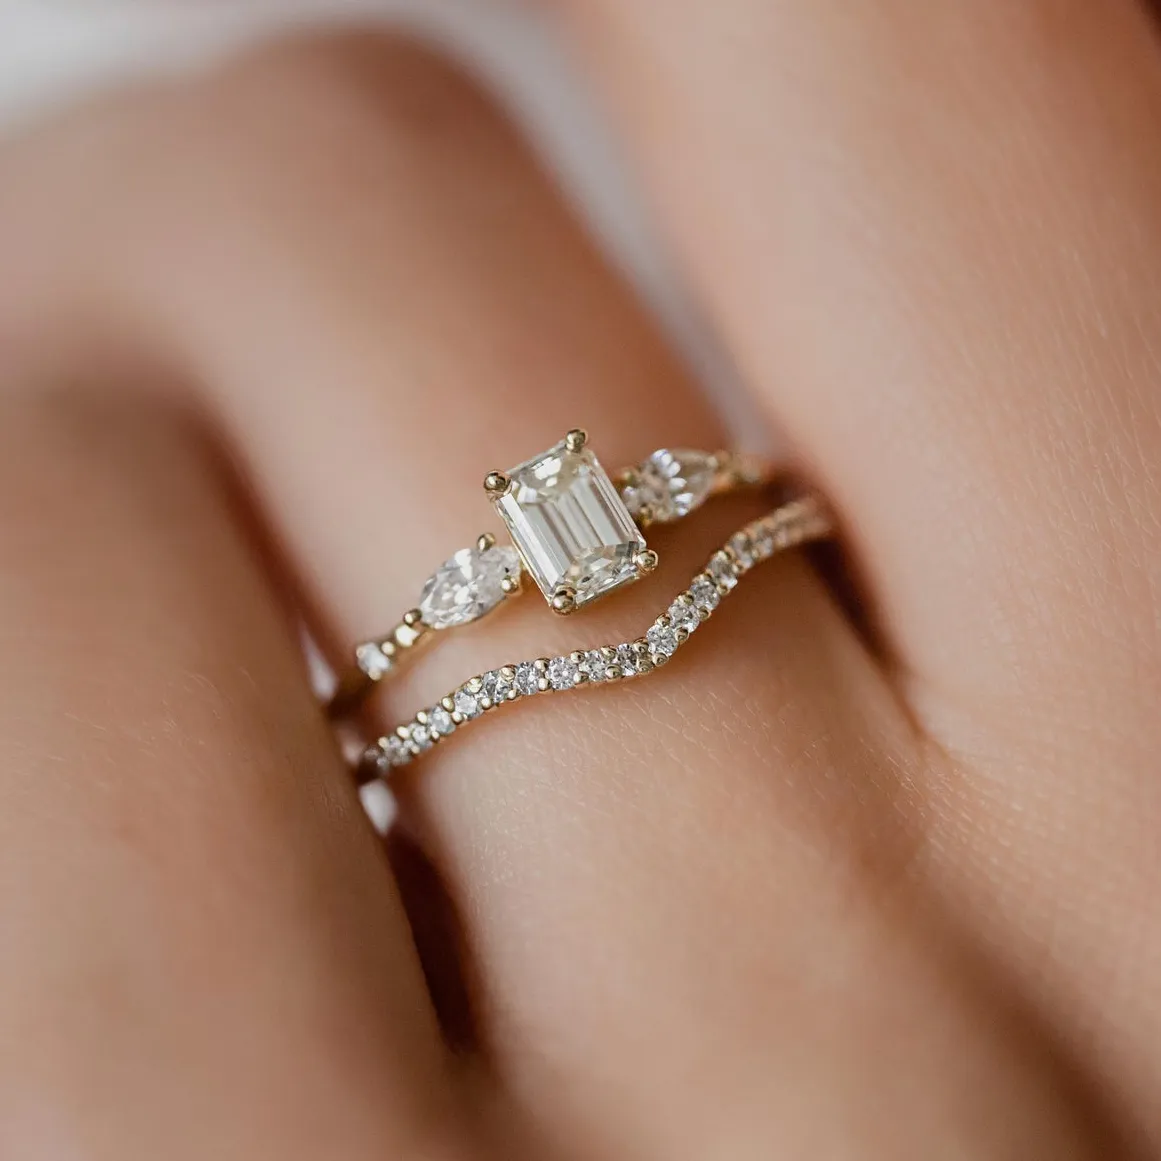 Gioielli personalizzati anelli da donna alla moda taglio smeraldo cristallo placcato oro zirconi cubici donne promessa matrimonio anello in argento Sterling 925